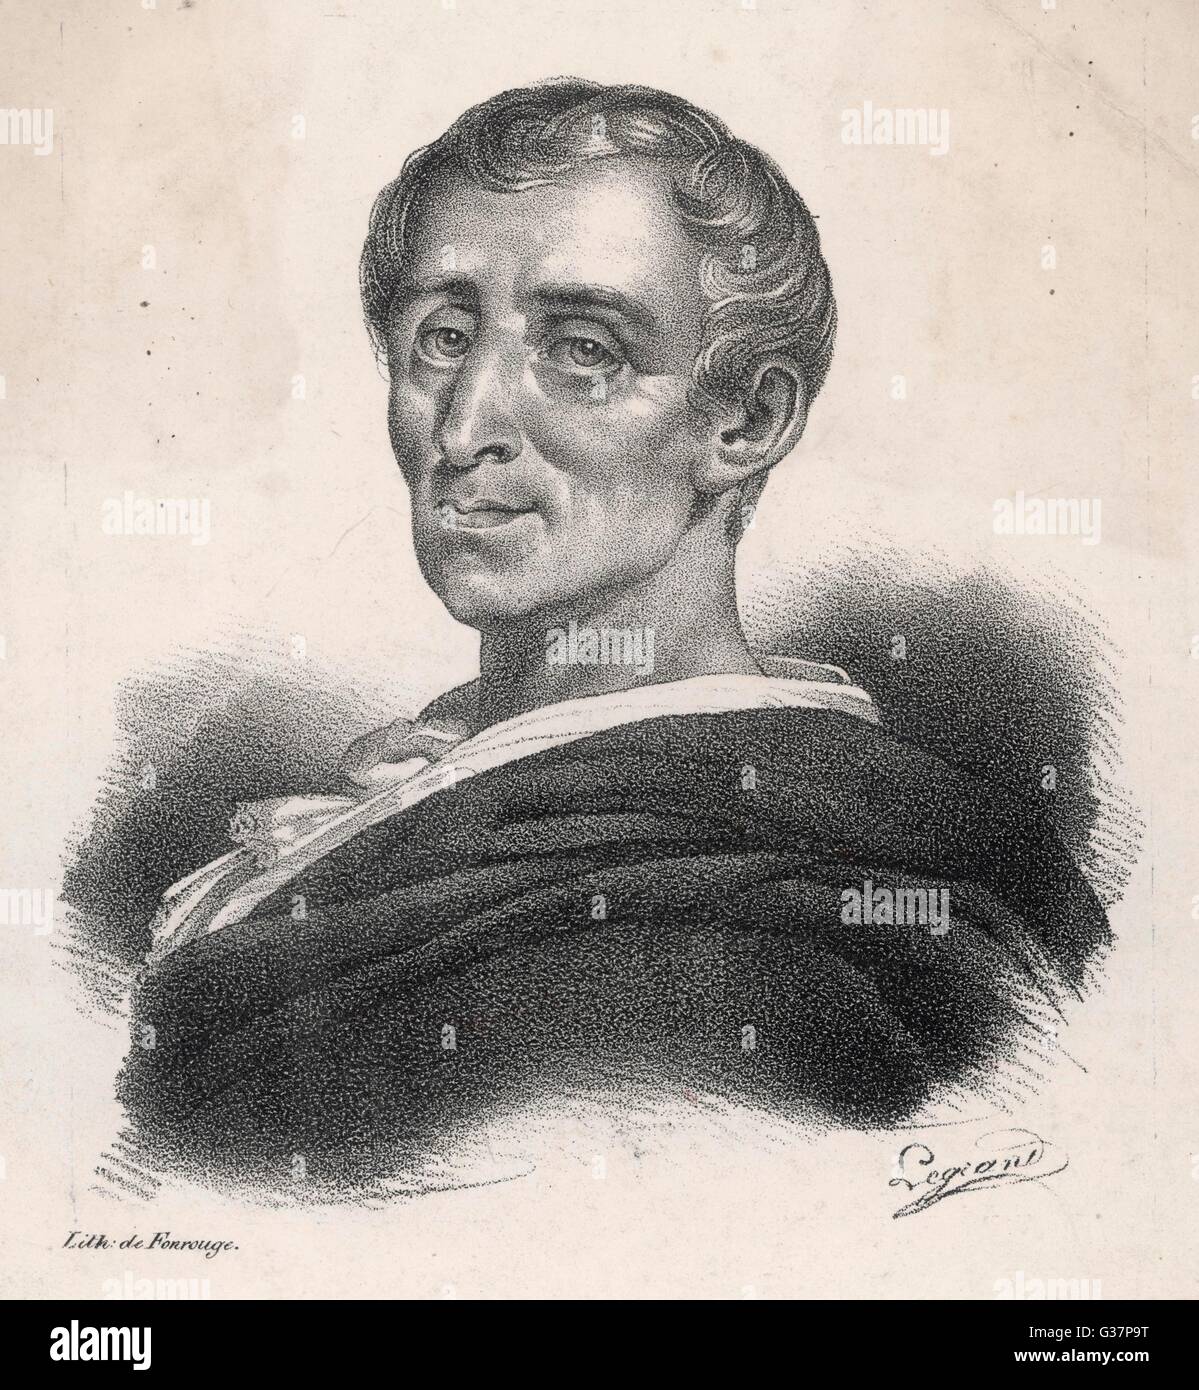 CHARLES LOUIS DE Secondat, barón de Montesquieu, filósofo francés Fecha